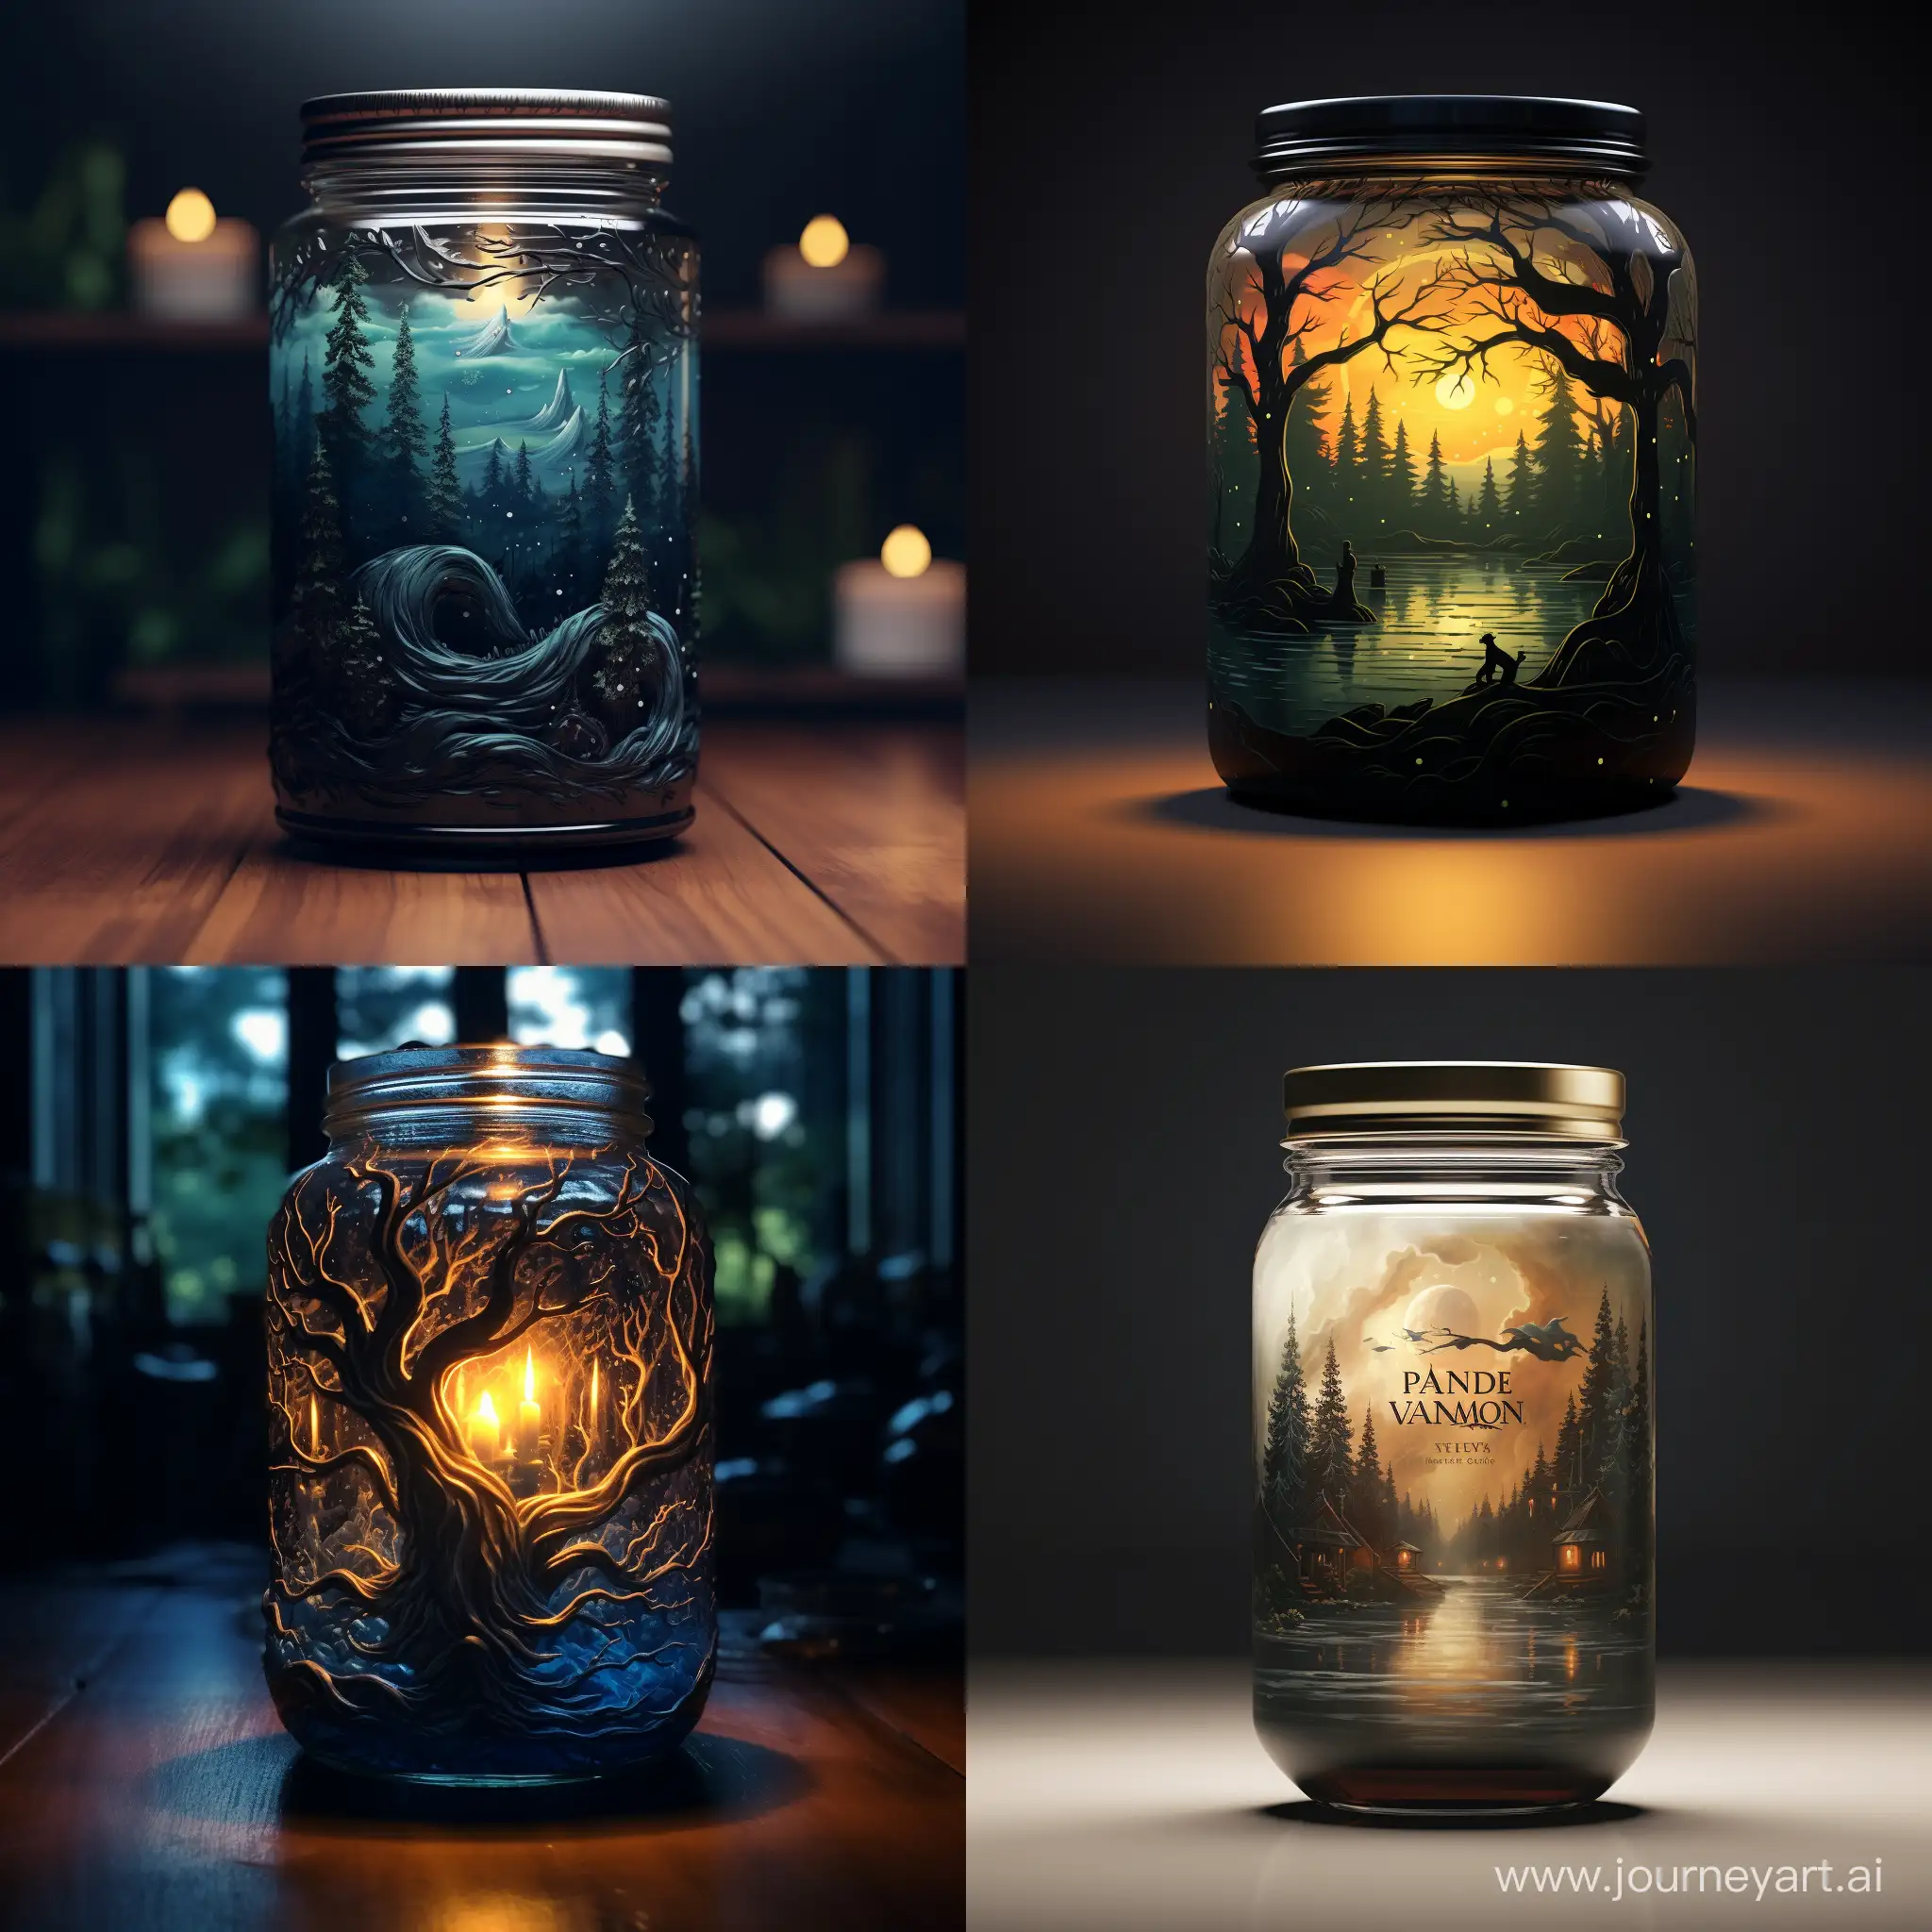 Enchanting-Fantasy-Candle-Illuminating-a-Jar-Whimsical-Art